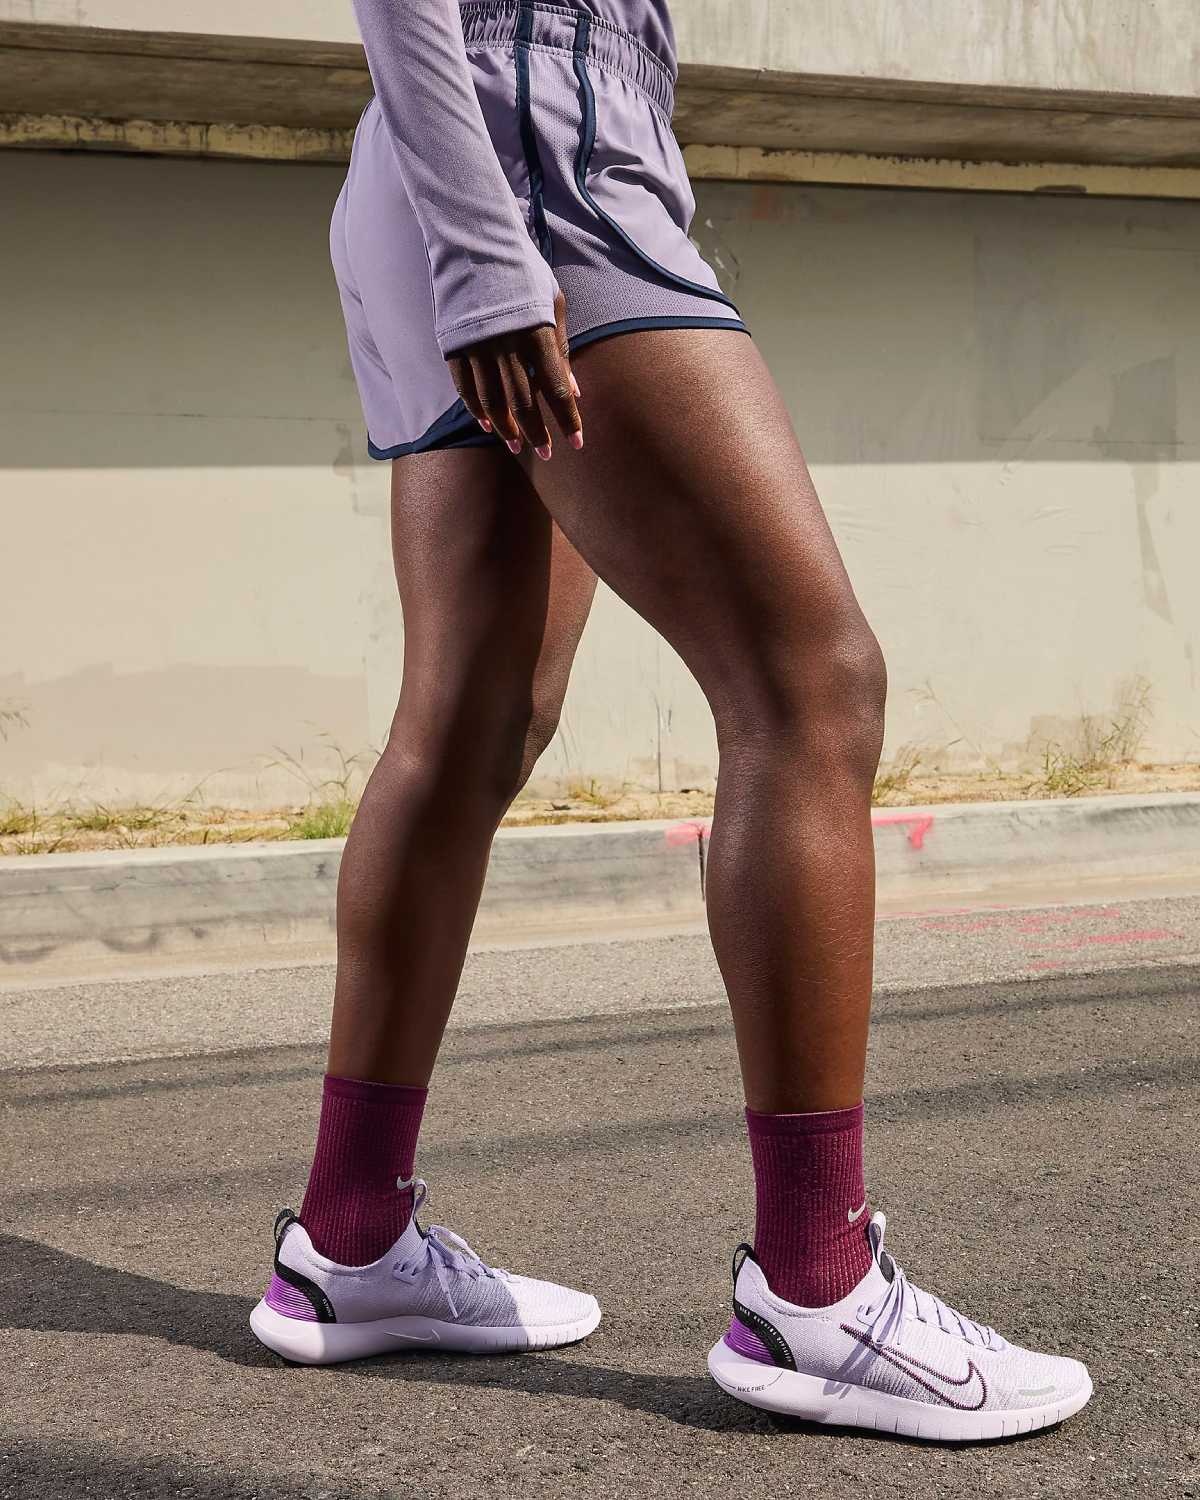 Queste 6 scarpe Nike da donna sono perfette per camminare e combinano comfort e stile